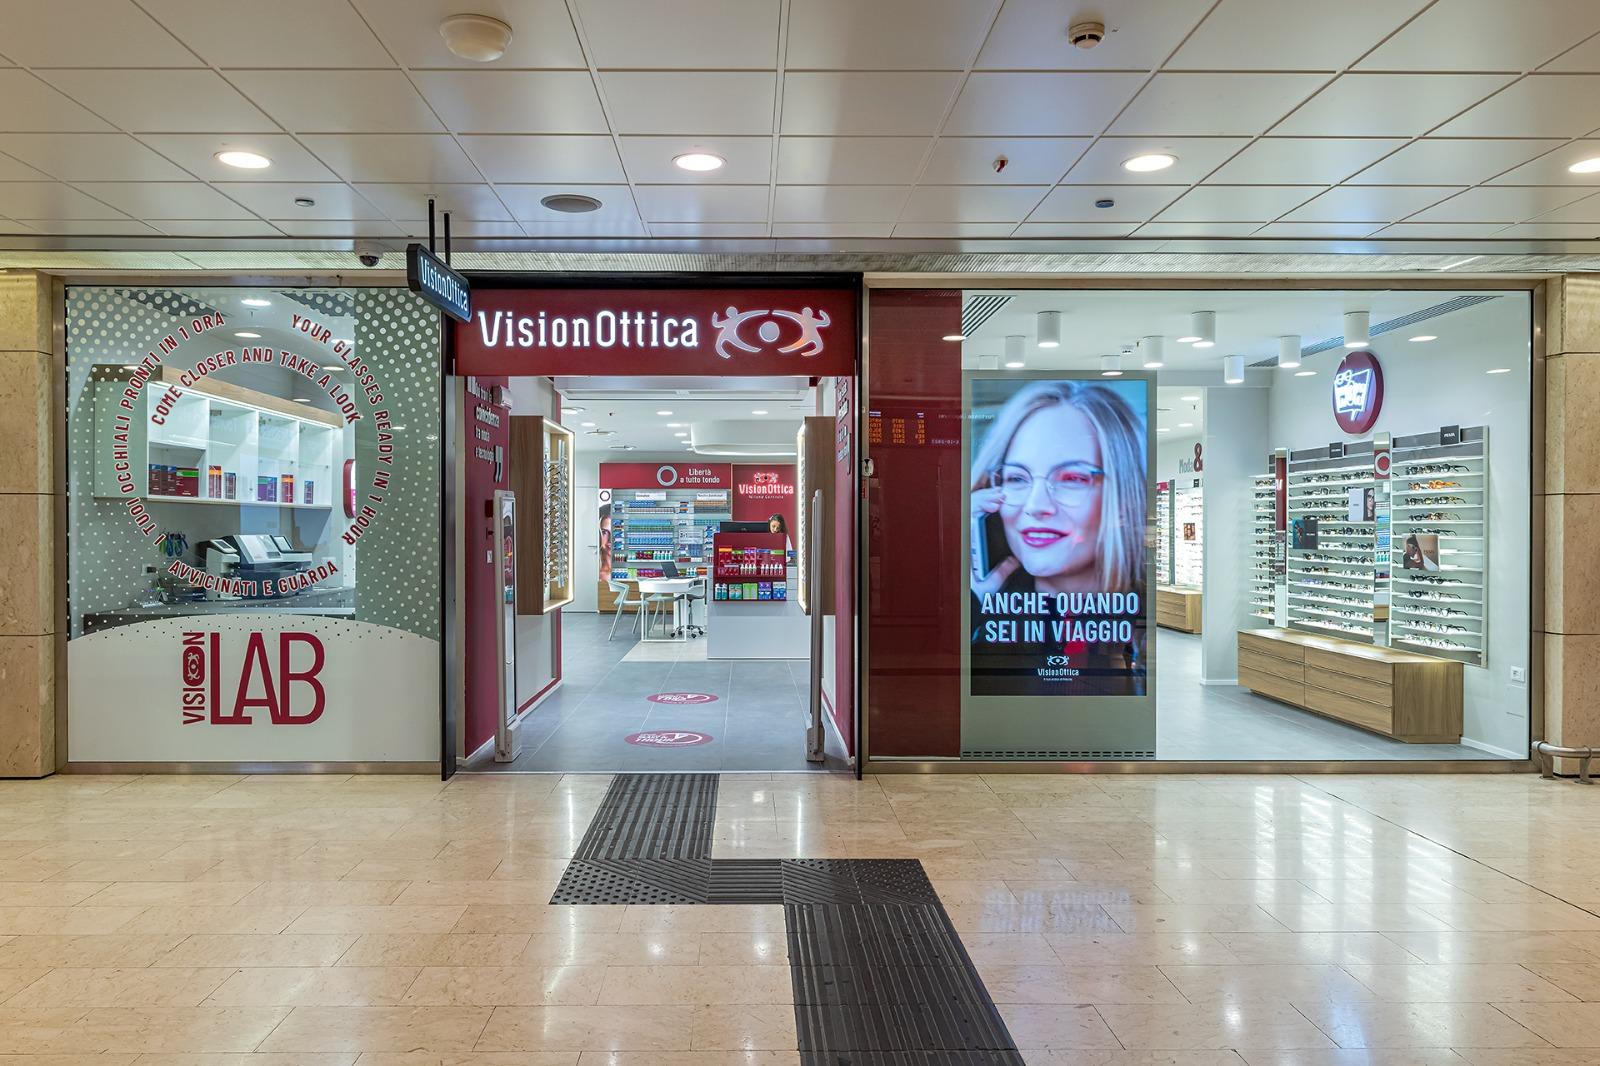 Milano Centrale accoglie il nuovo store VisionOttica